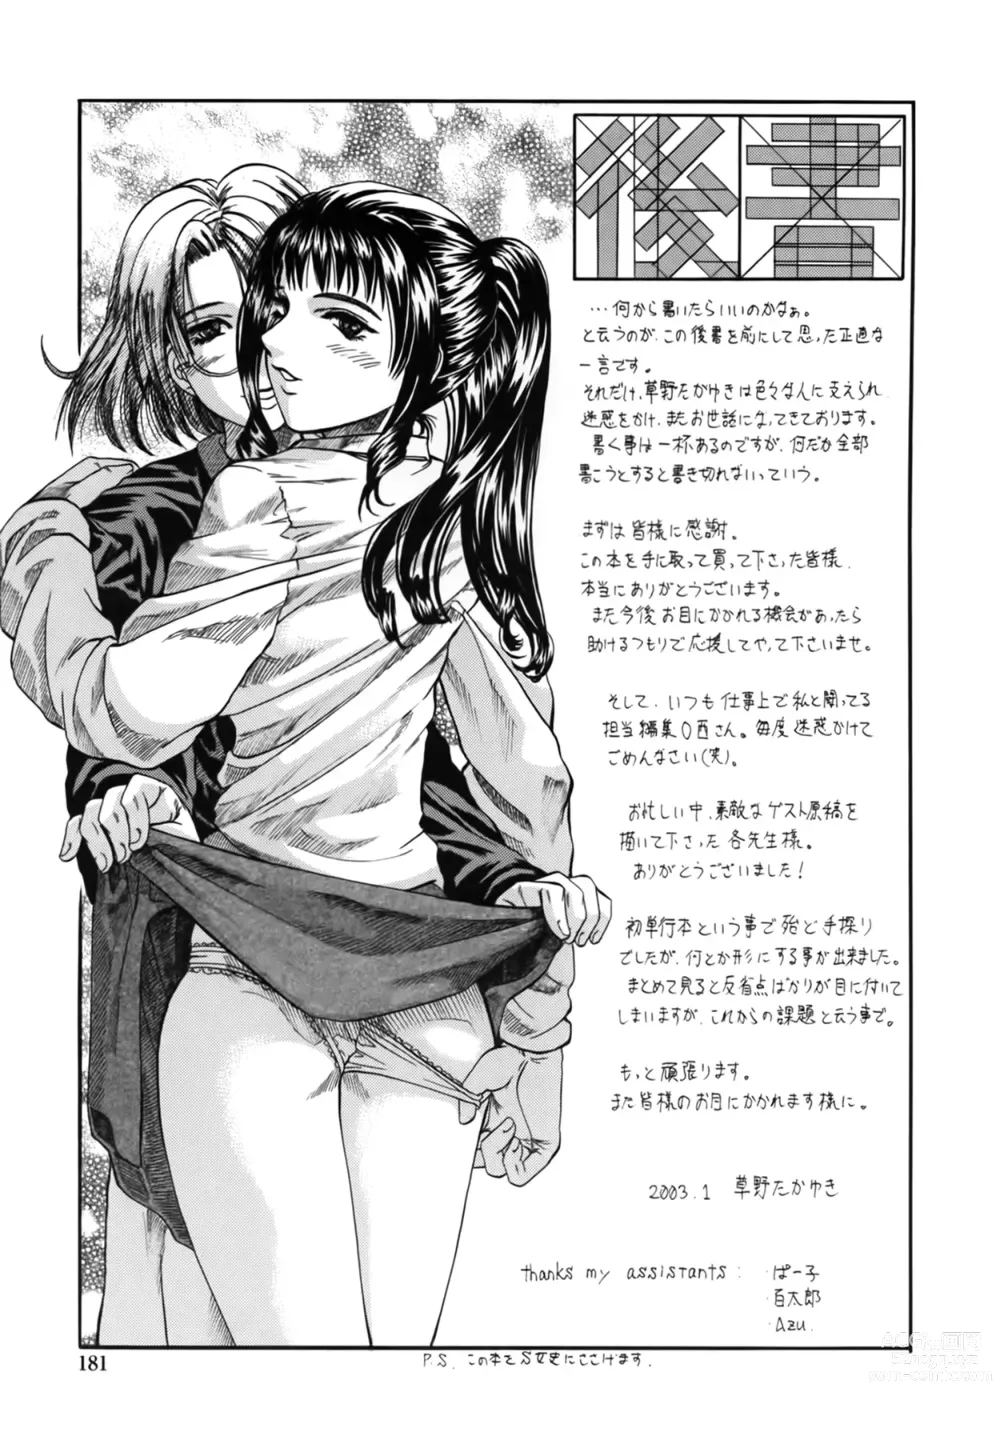 Page 181 of manga Yuu Mama - Painful Love